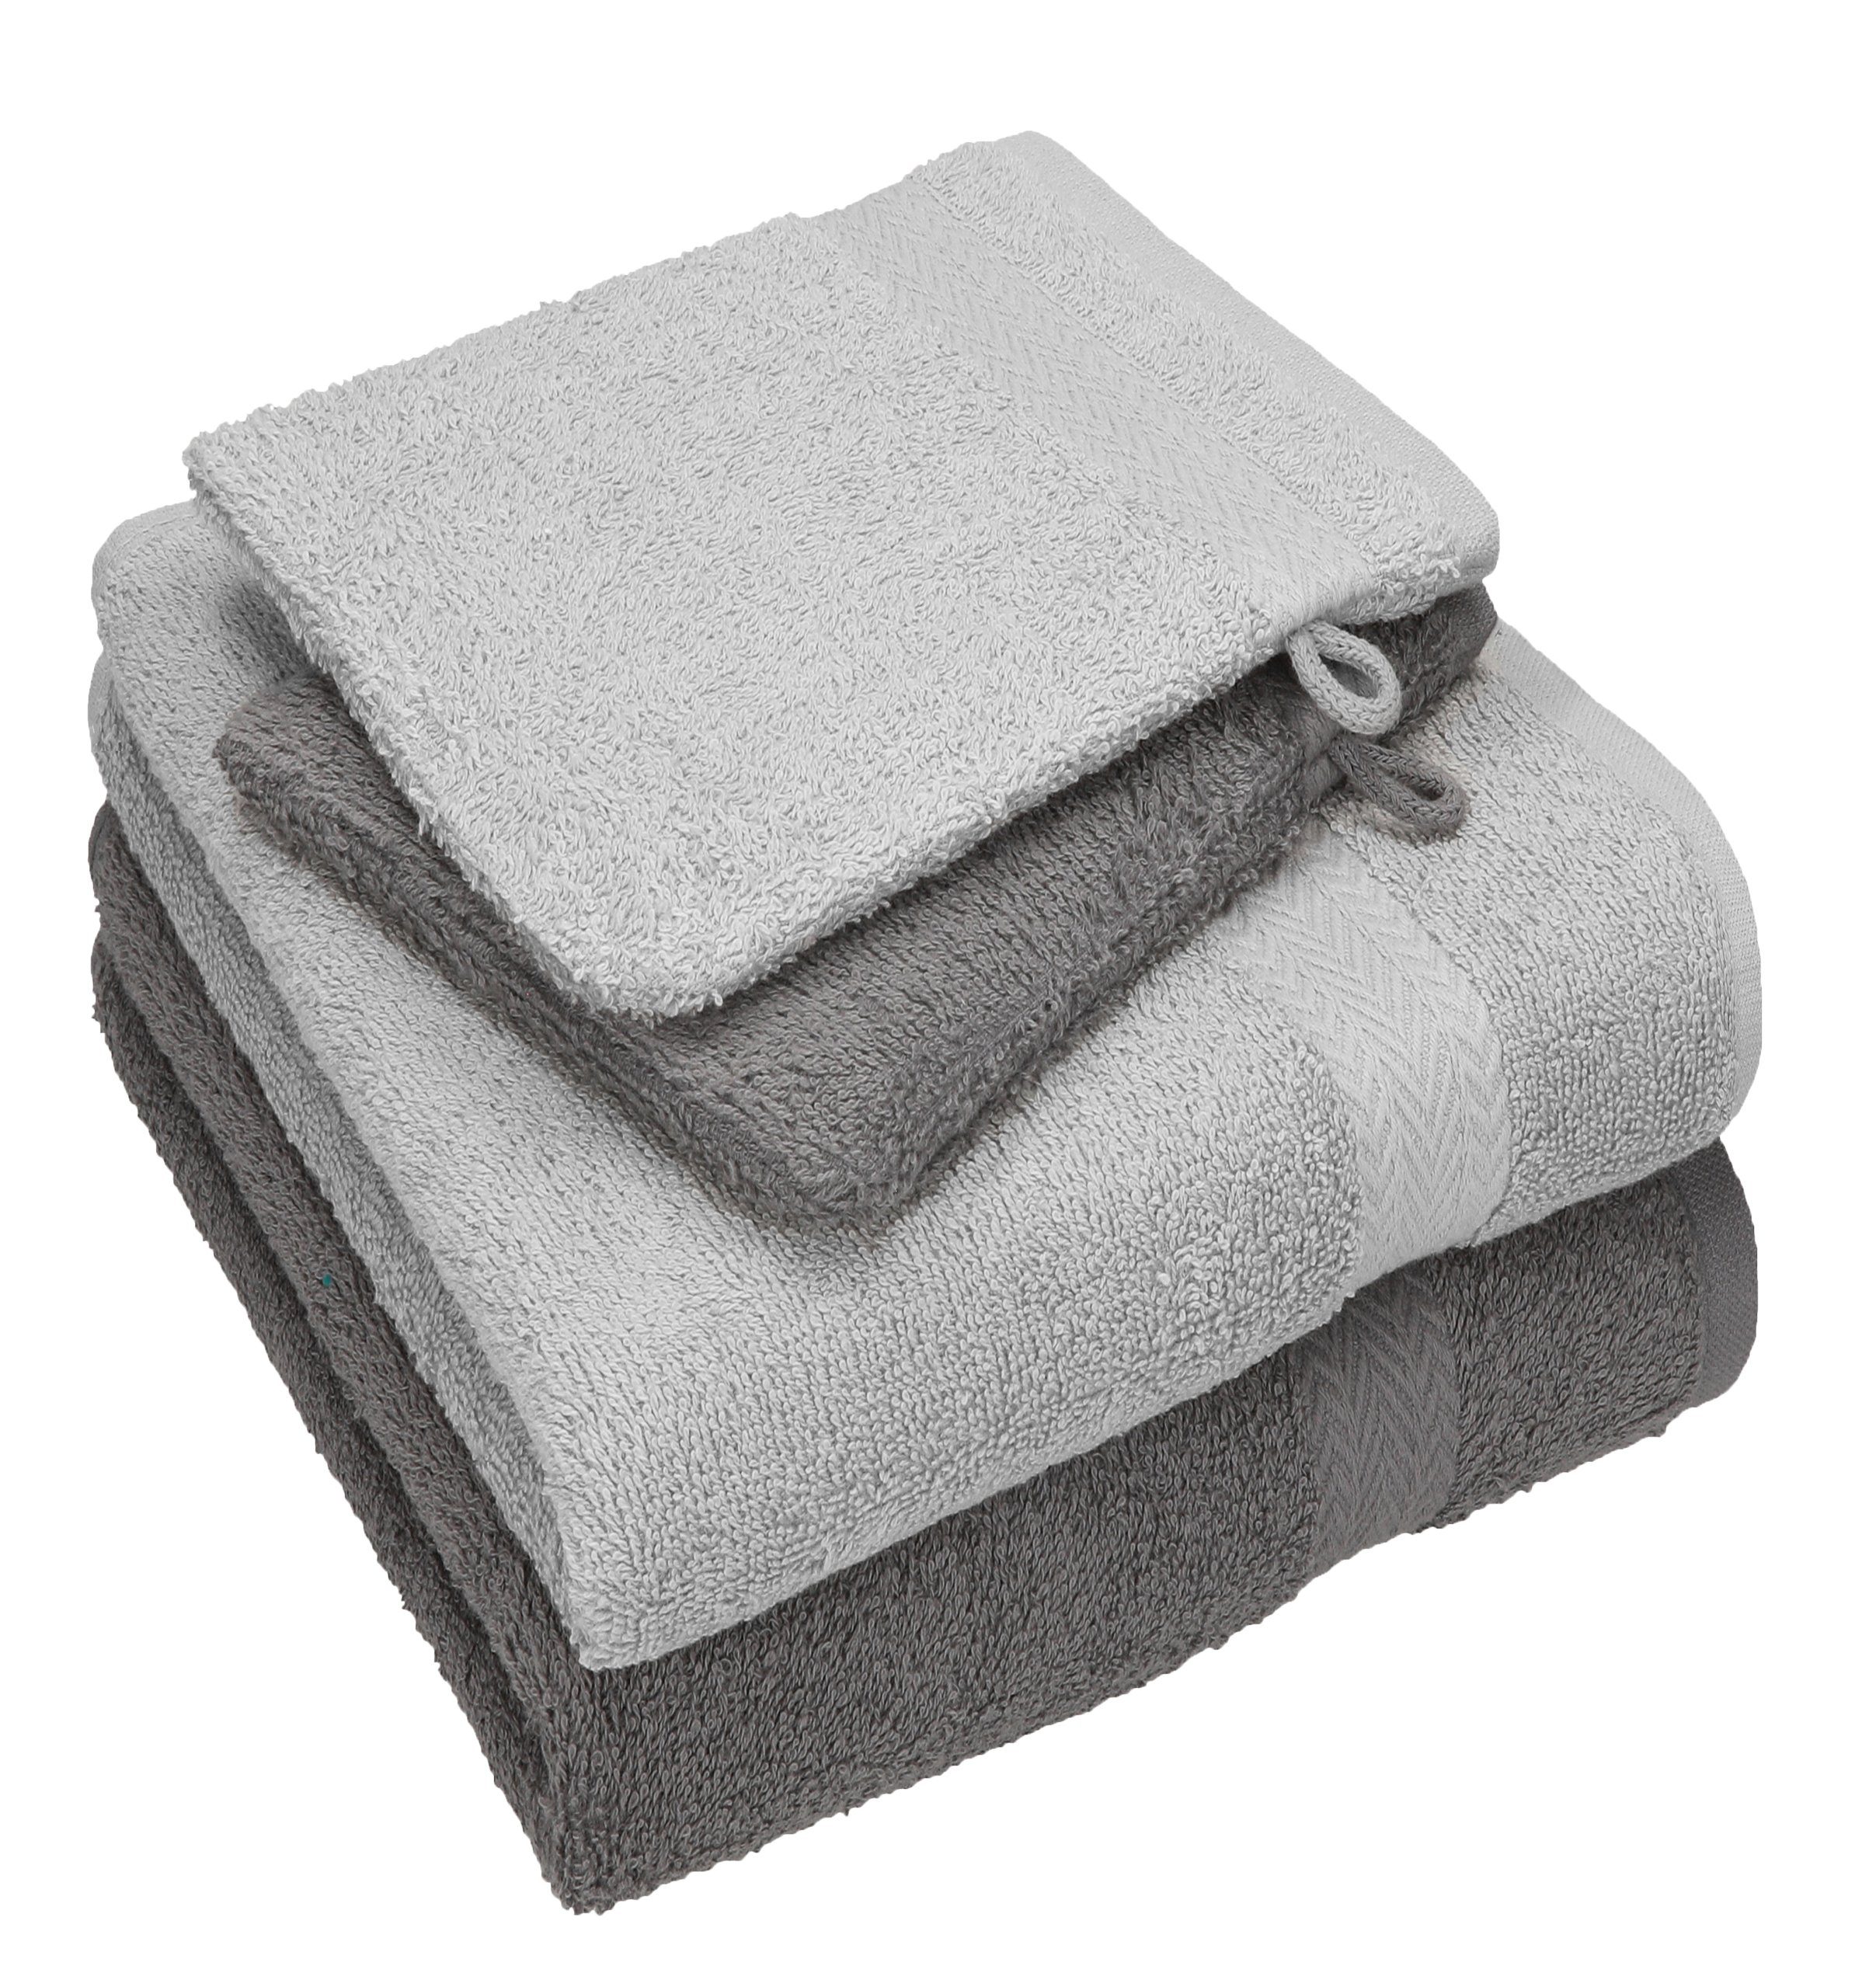 Betz Handtuch Set 4 TLG. Handtuch Set Happy Pack 100% Baumwolle 2 Handtücher 2 Waschhandschuhe, 100% Baumwolle anthrazit grau - silber grau